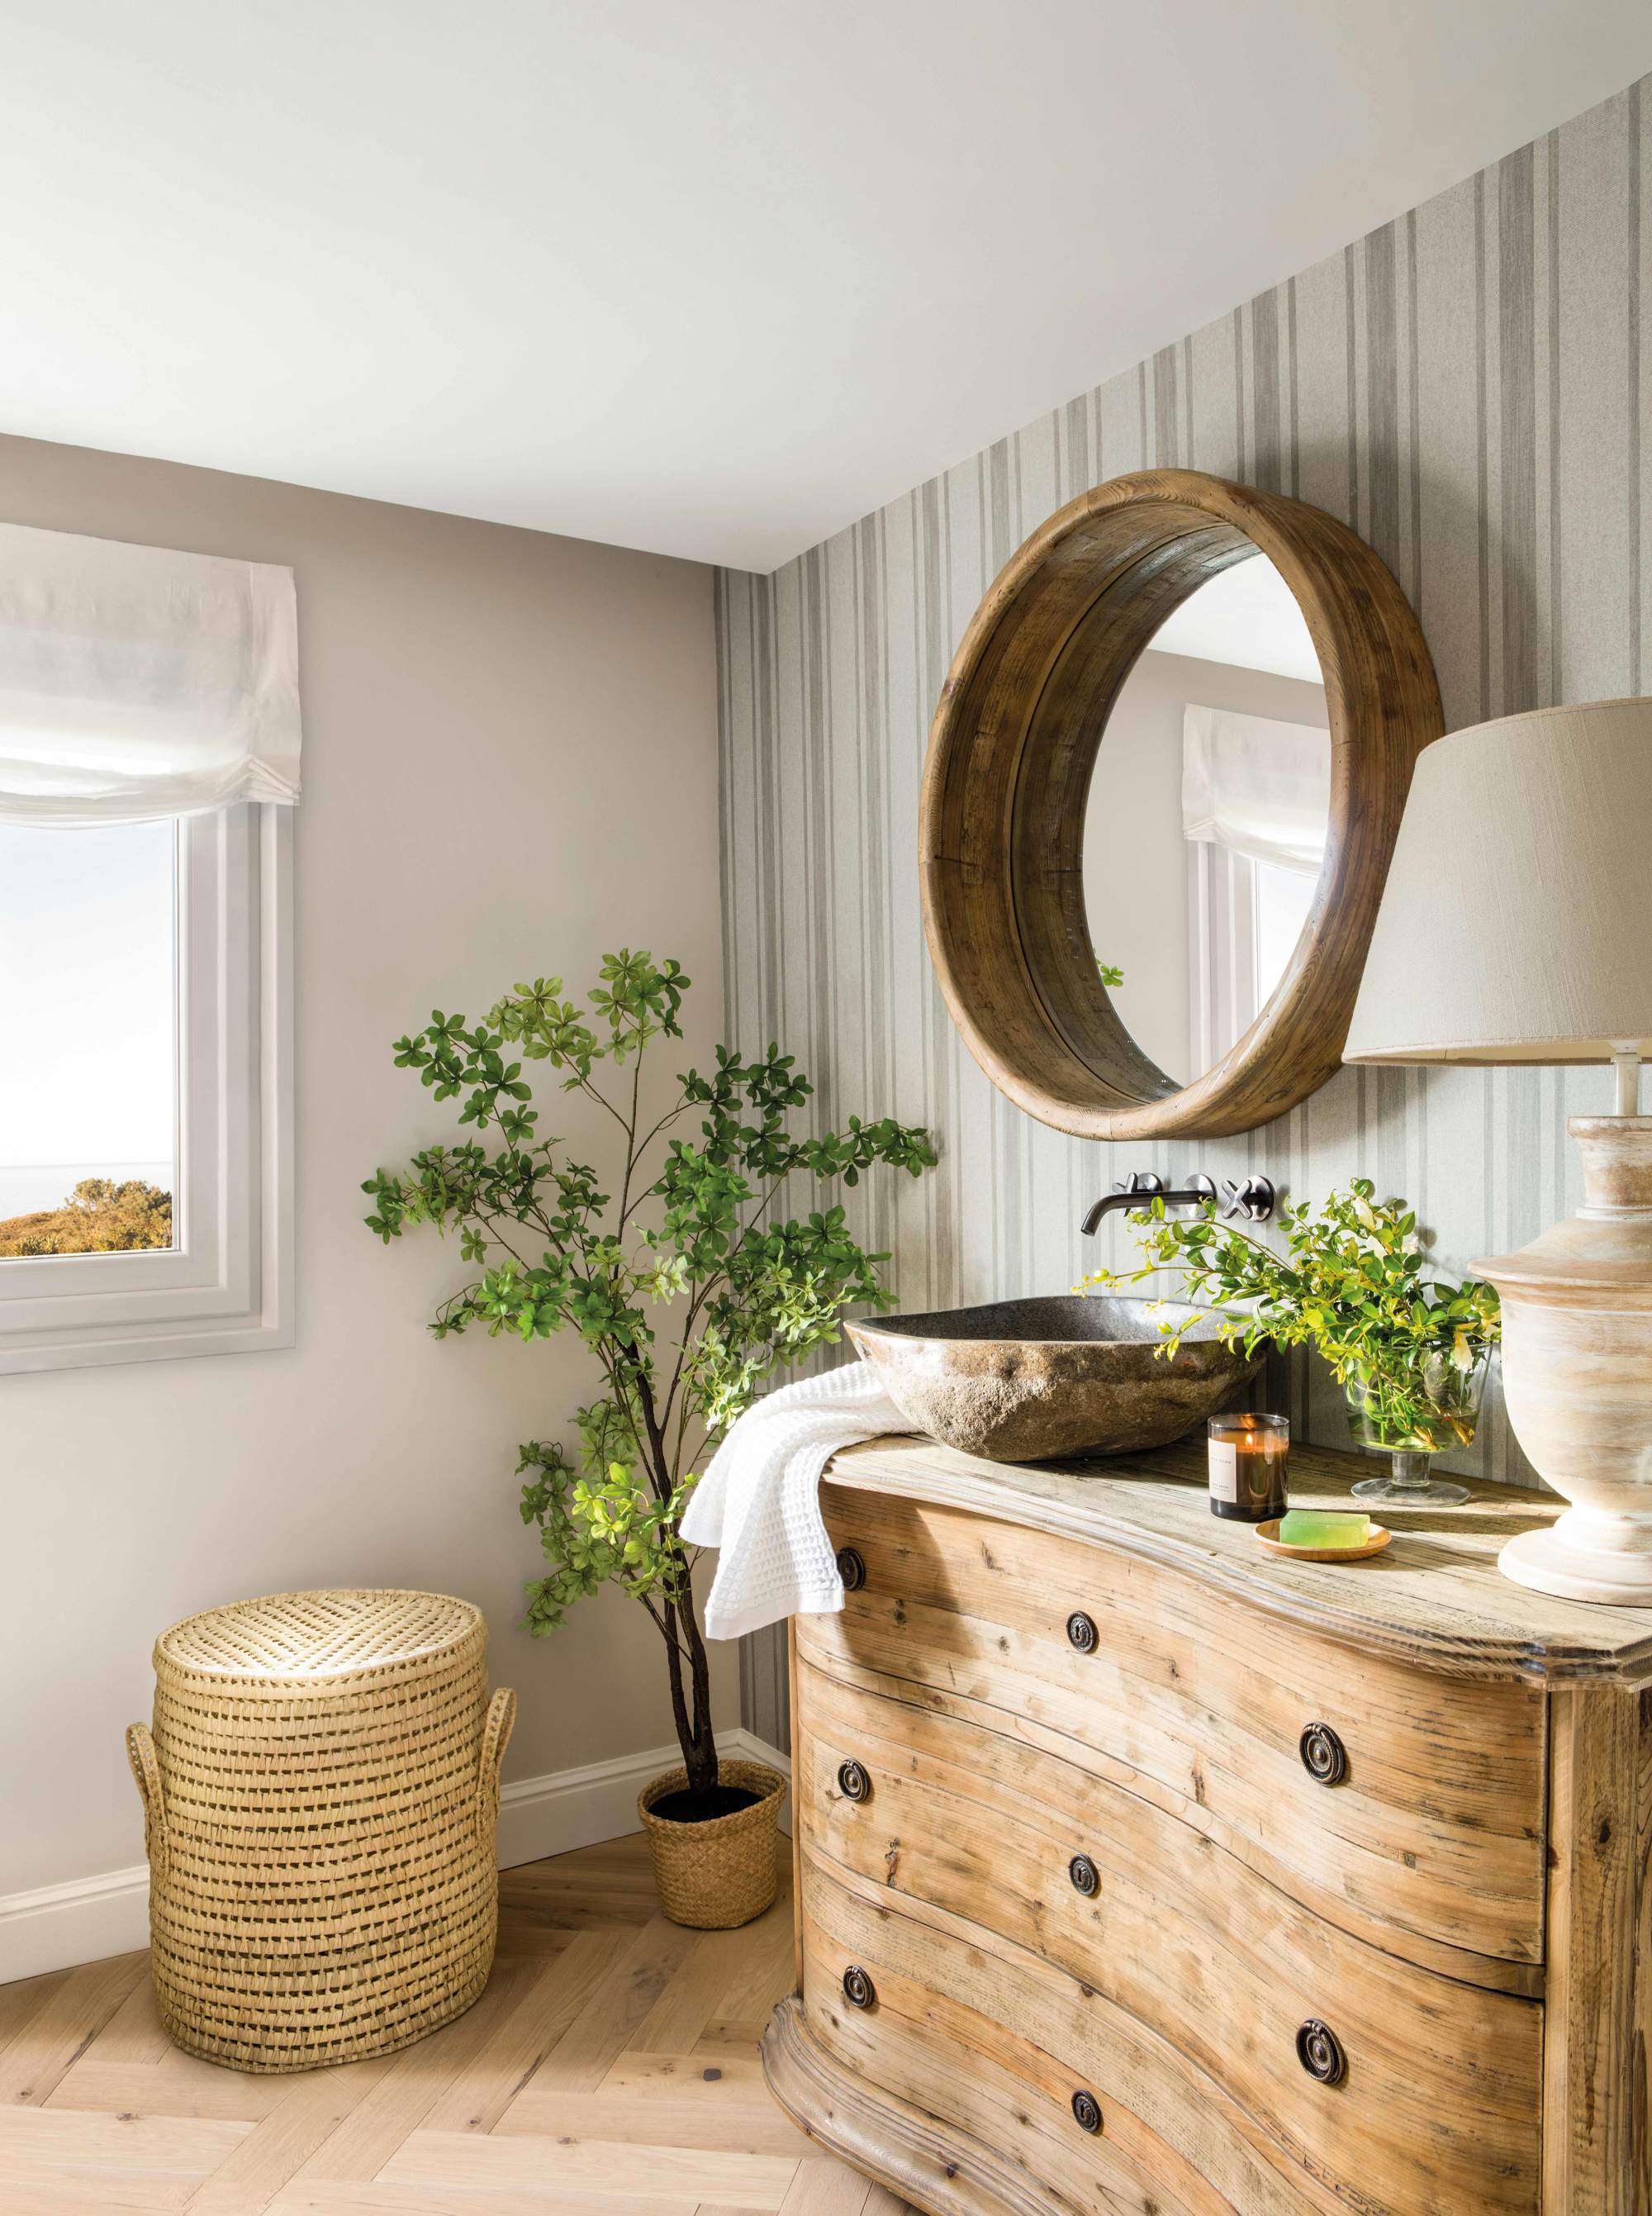 Baño con cómoda ondulada de madera como mueble de lavabo, lavamanos exento, espejo redondo, cesto de ropa, plantas y lámpara de mesa